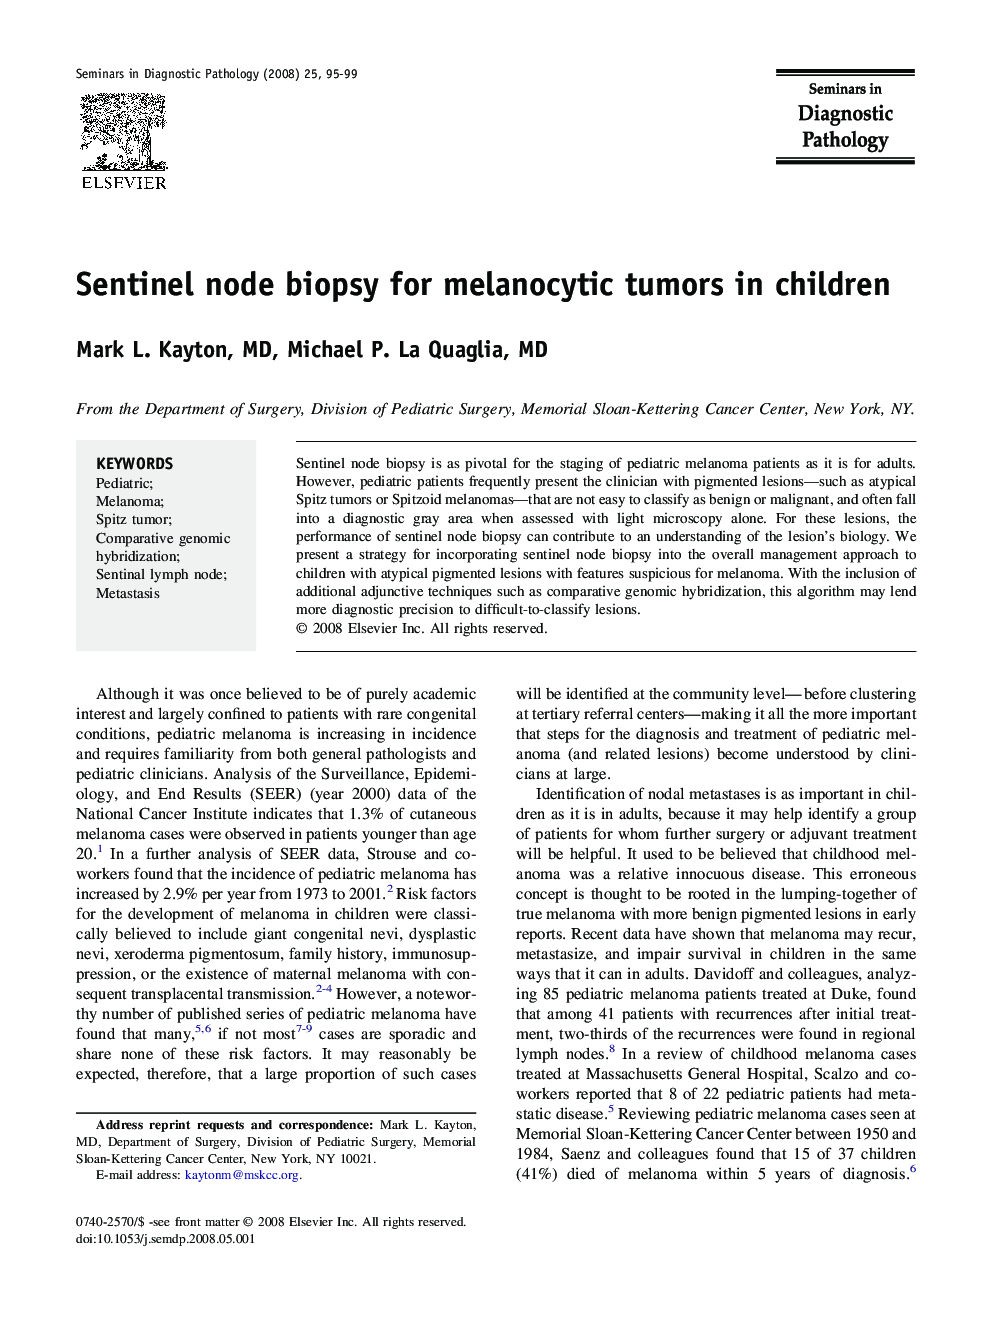 Sentinel node biopsy for melanocytic tumors in children